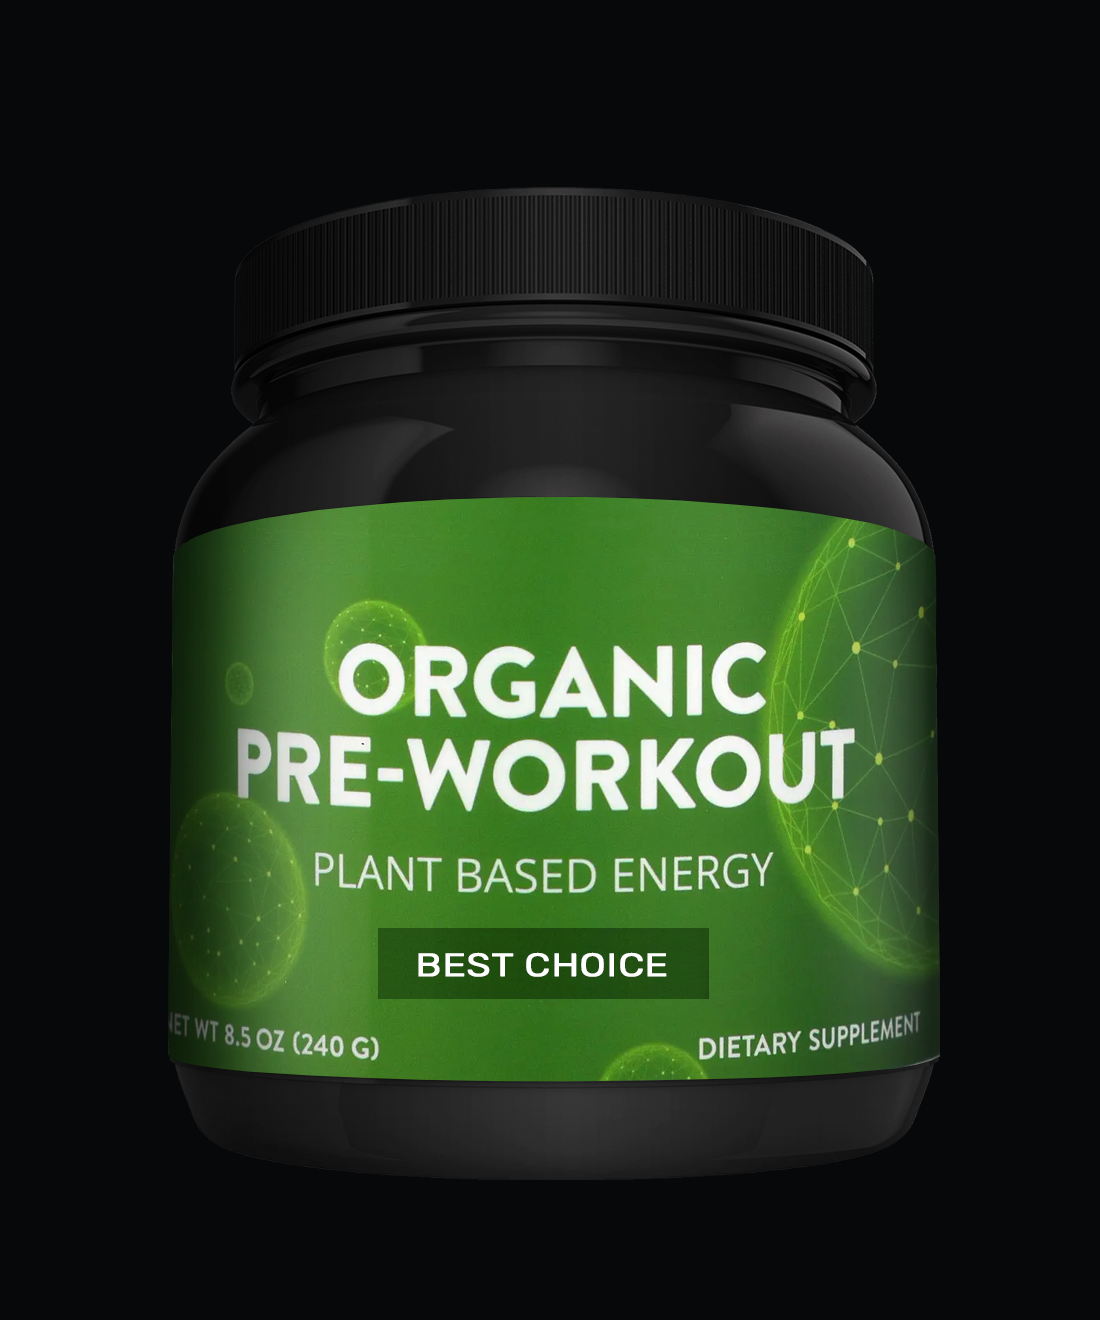 Organic pre-workout